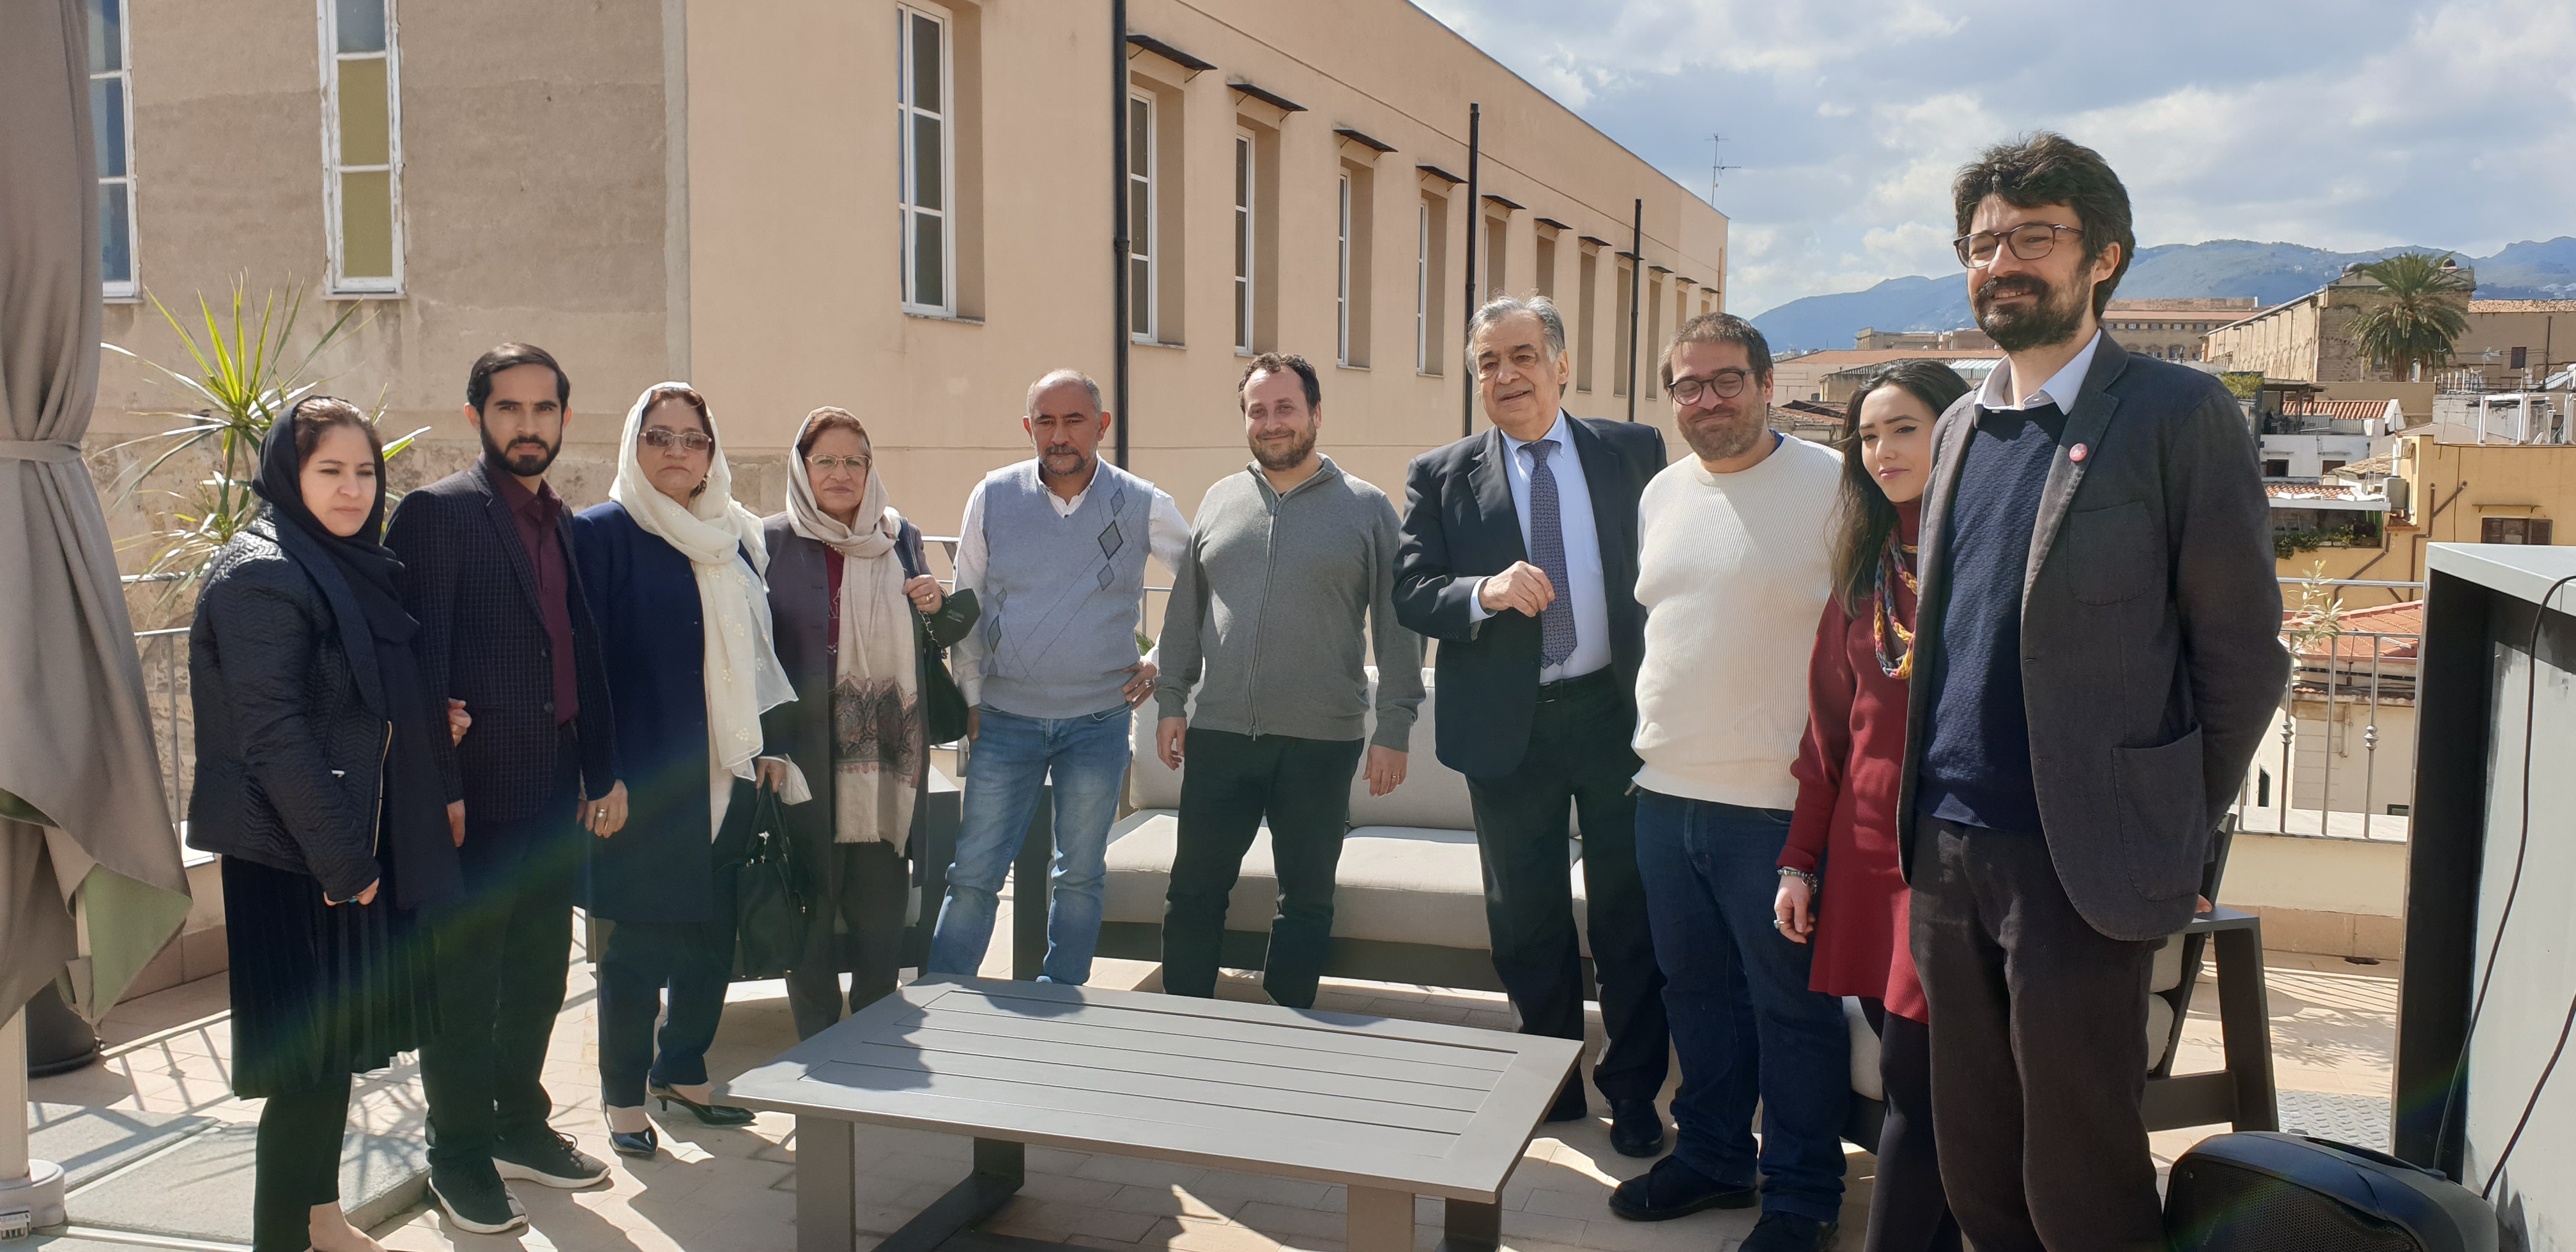 A Palermo nuova vita per la famiglia di Shapoor. Profughi Afghani iniziano percorso di integrazione e accoglienza grazie al sostegno di unione Buddhista Italiana